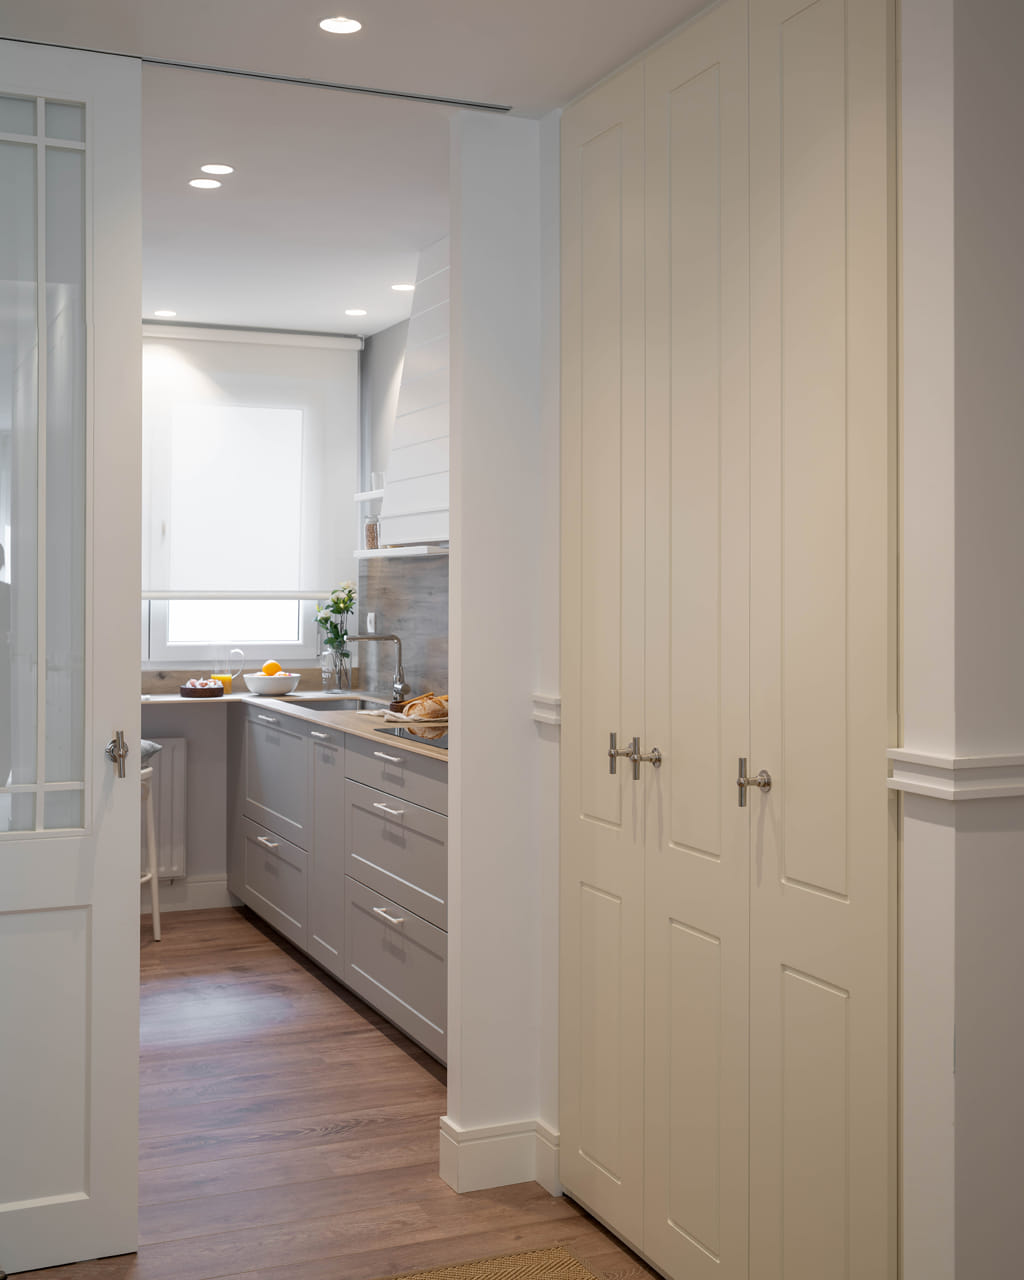 Keuken in wit en grijs met hang- en onderkasten